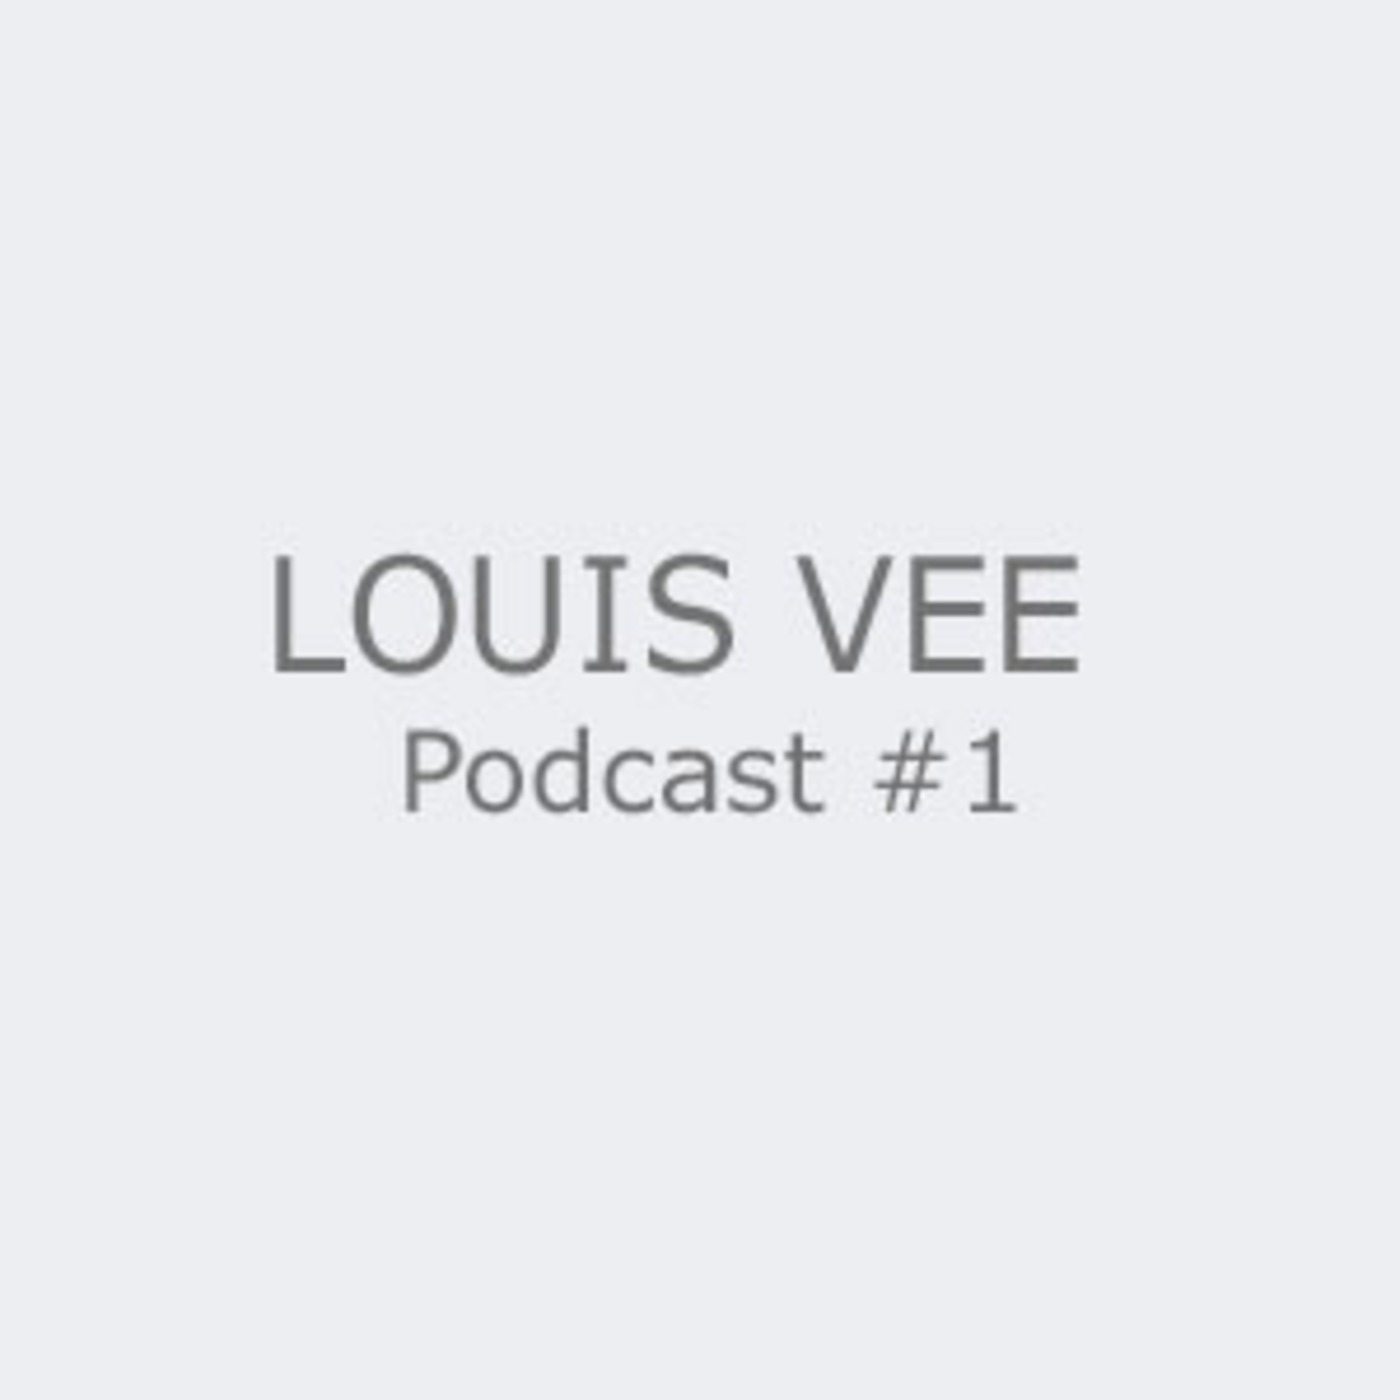 Louis Vee Podcast #1